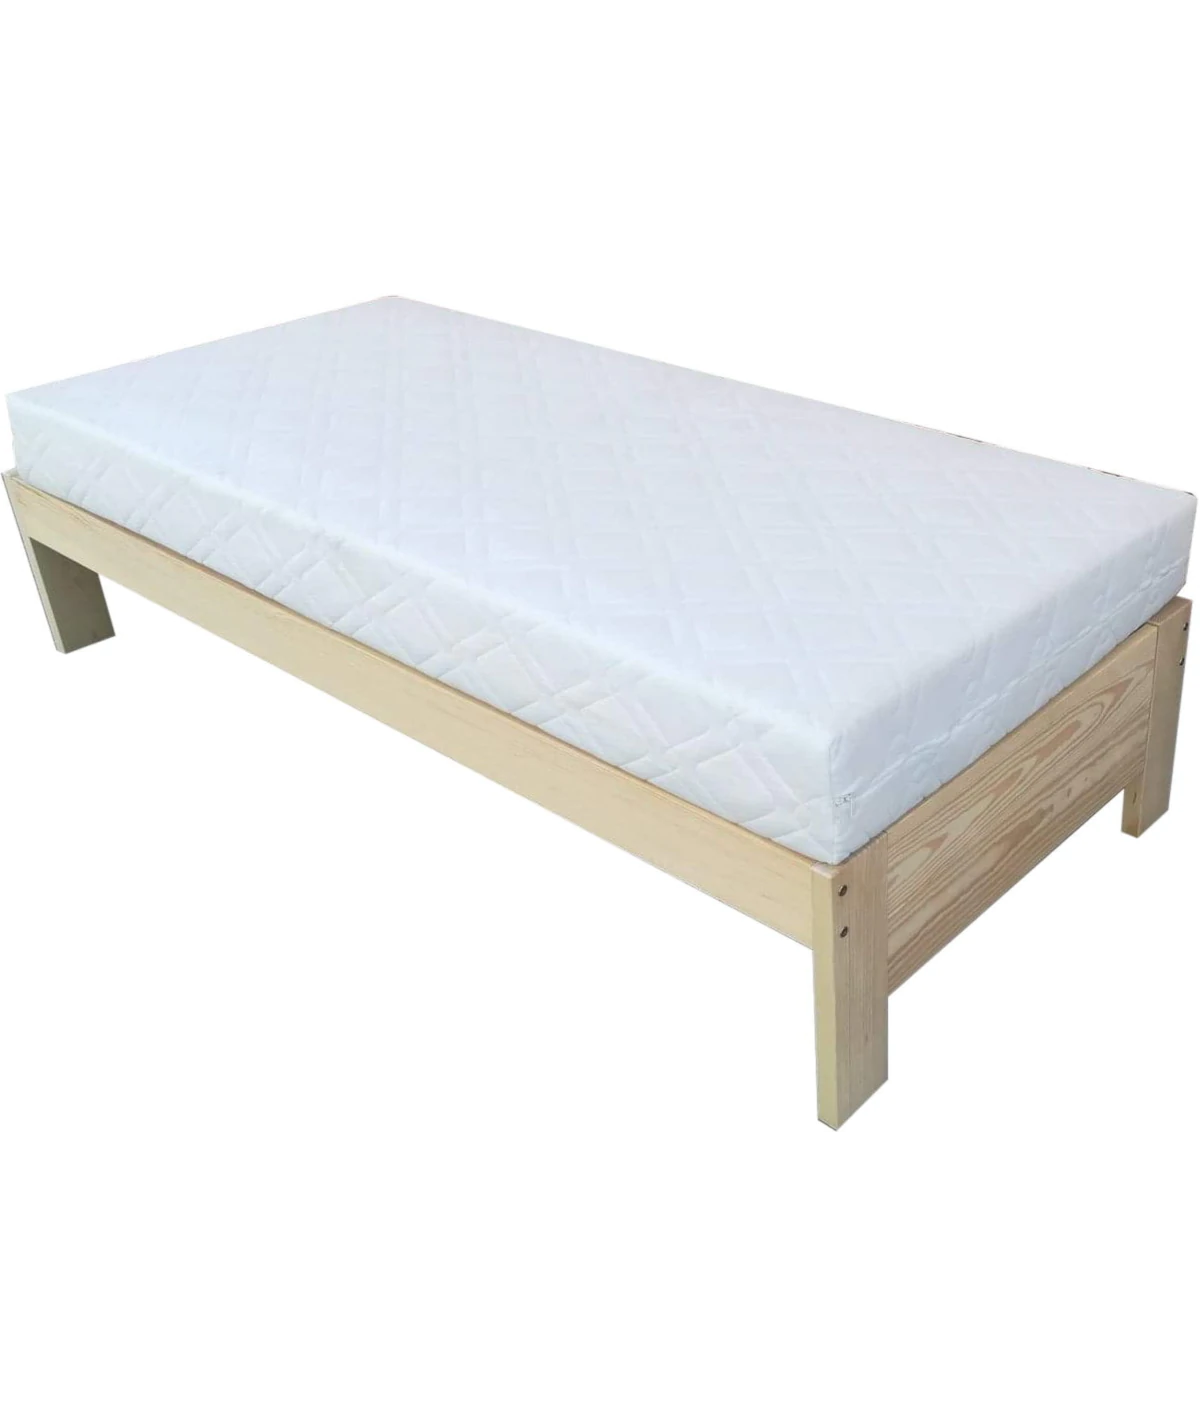 Podstawa drewniana łóżka kontynentalnego Baza Zaczarowana Sypialnia